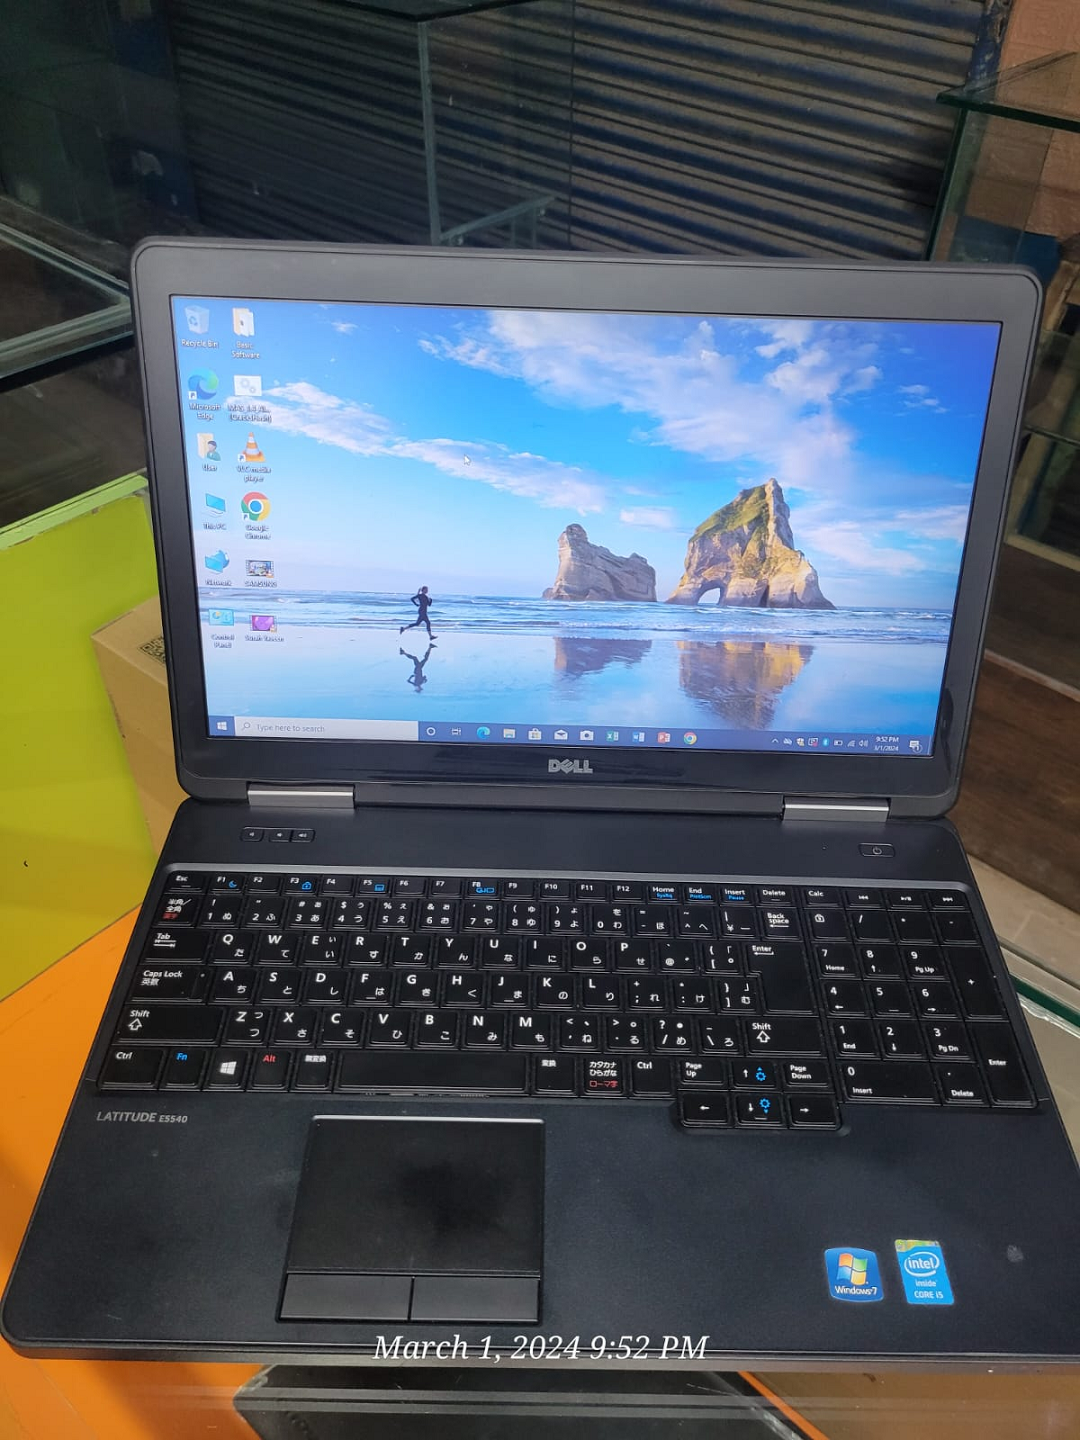 Dell latitude e5540 laptop i5 4thgeneration price in pakistan